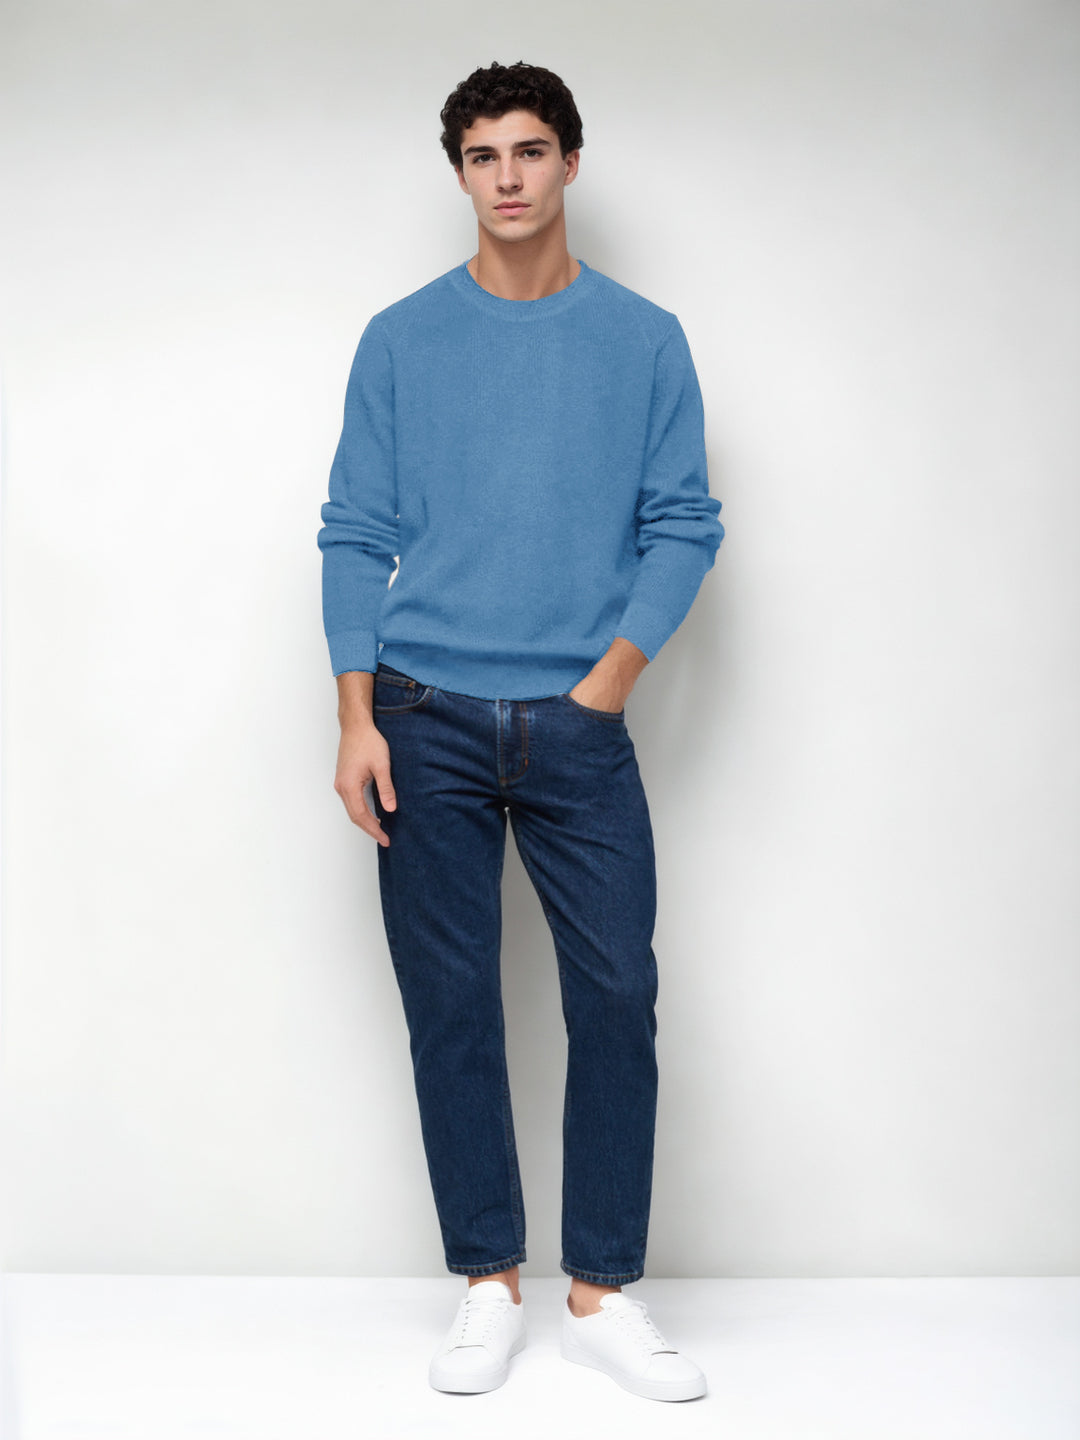 Hemsters Sky Blue Knitted Full Sleevs Sweatshirt For Men